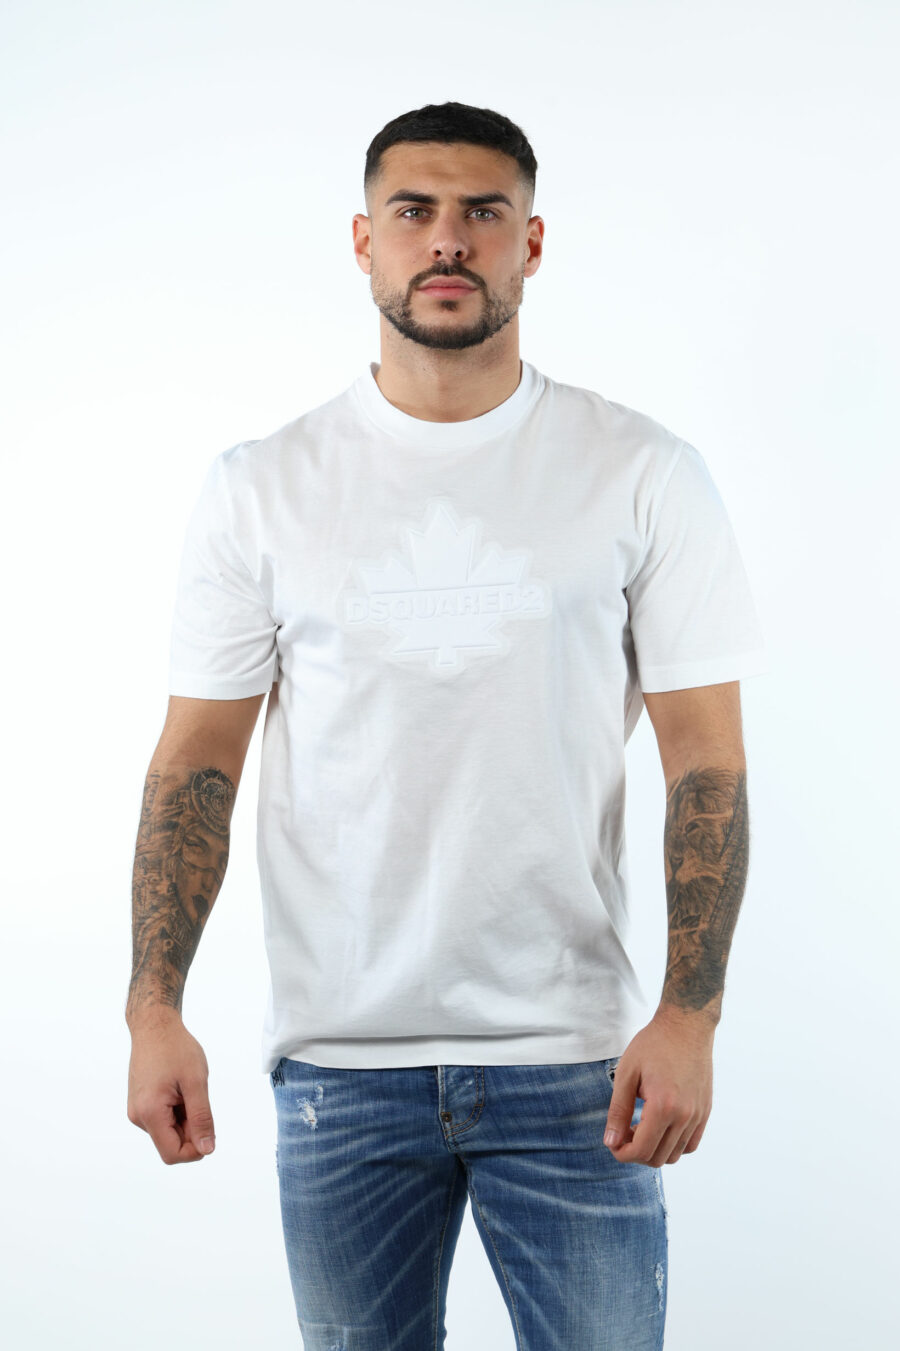 Camiseta blanca con maxilogo hoja monocromático en relieve - 106619